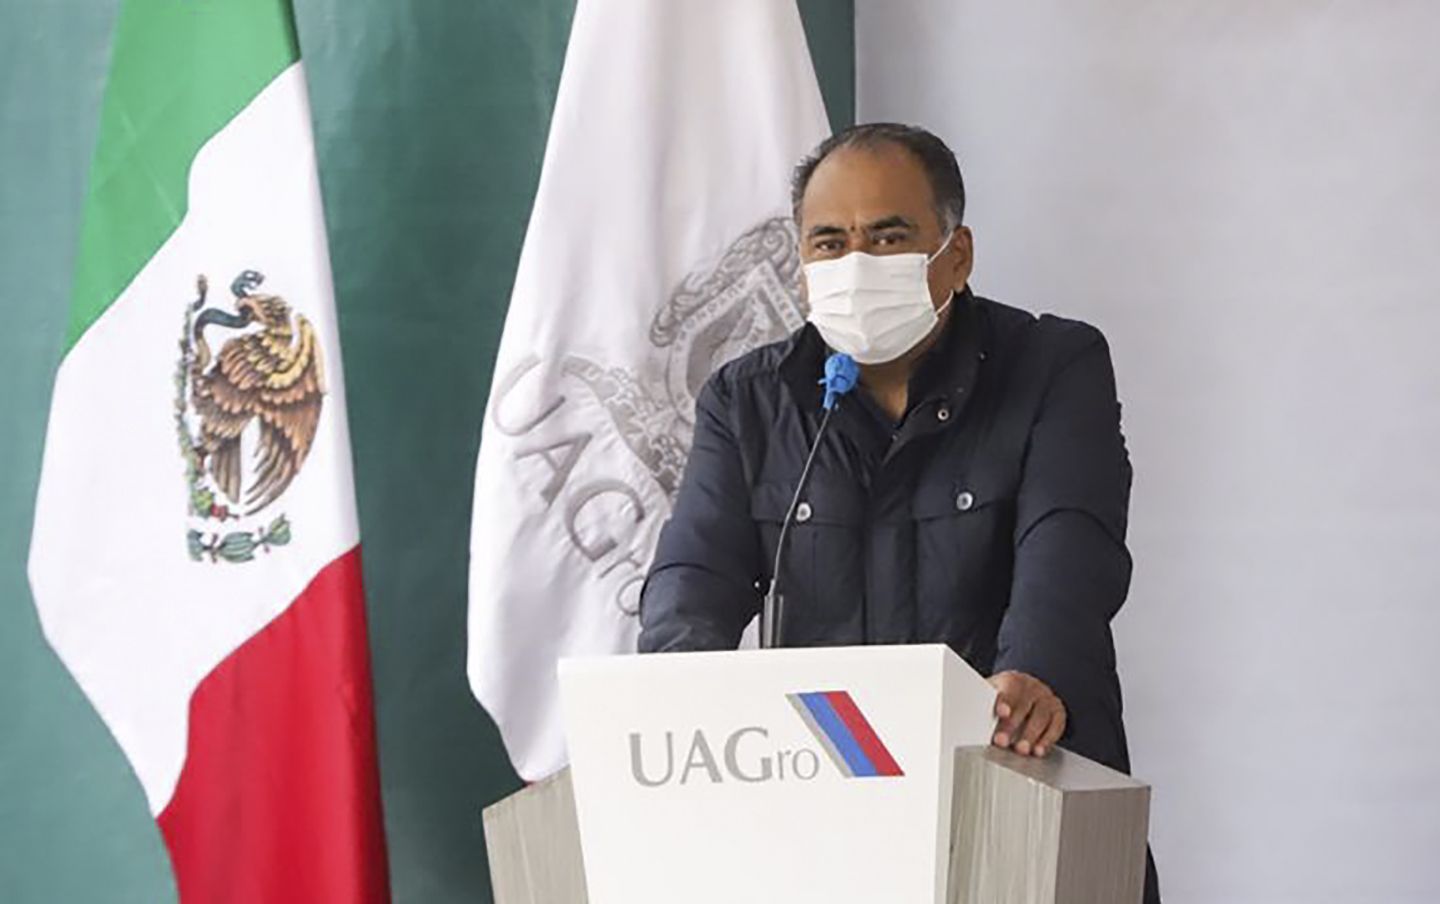 Reconoce Héctor Astudillo las acciones de la UAGro frente a la pandemia
